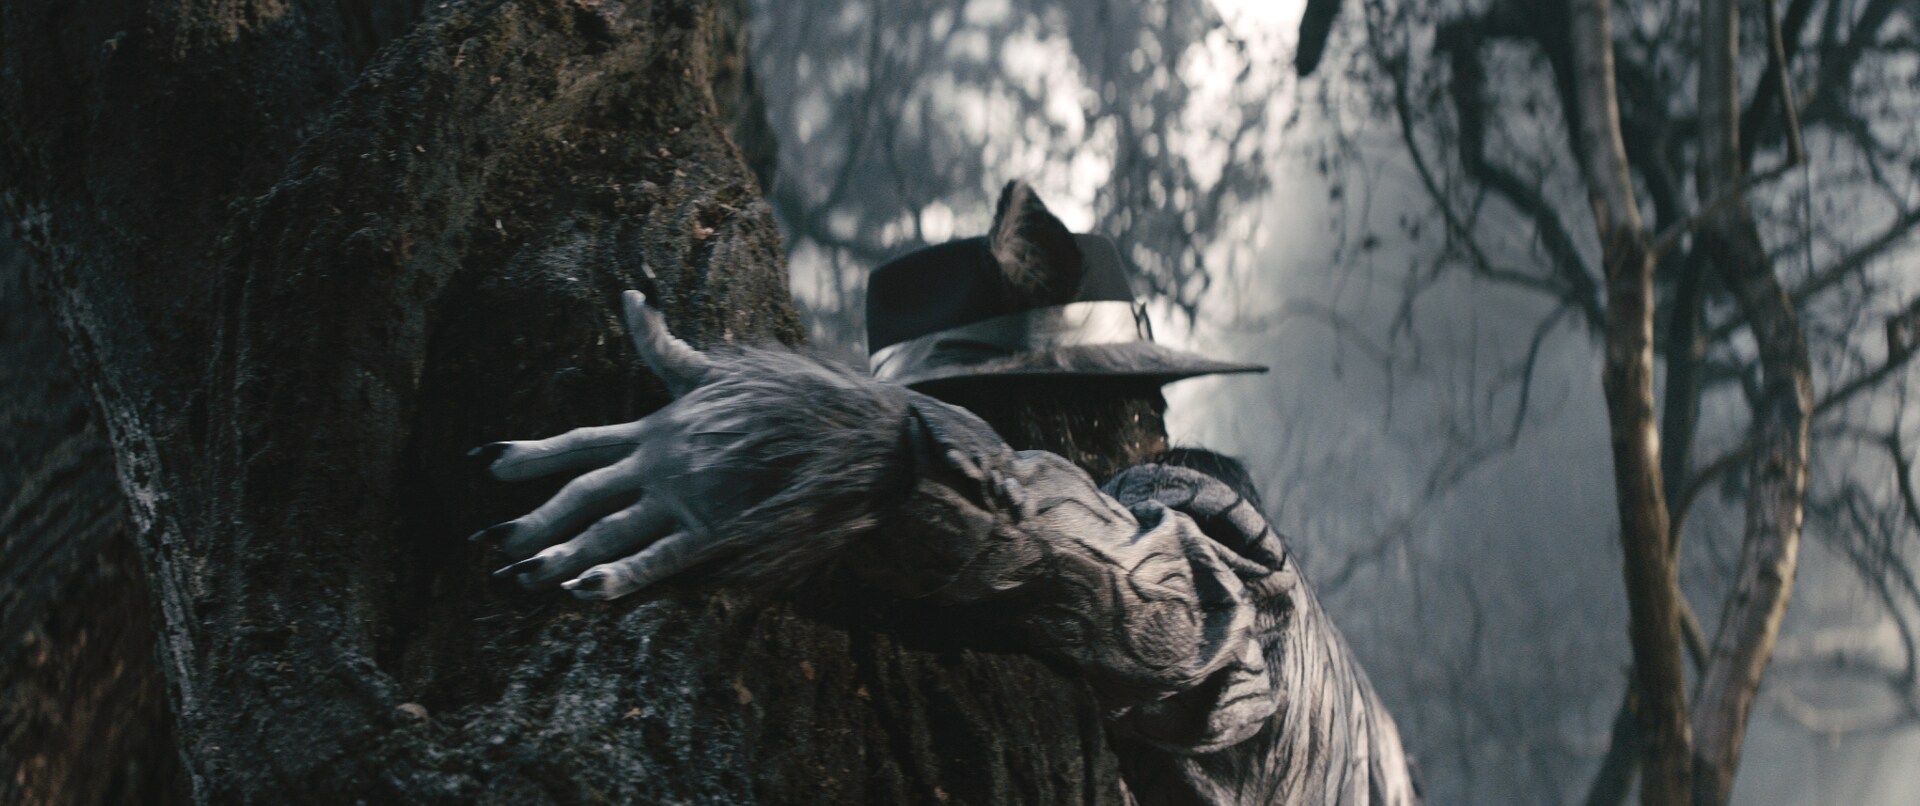 Johnny Depp encarna al malvado lobo en “Into the Woods”. Basada en el musical ganador del premio ...